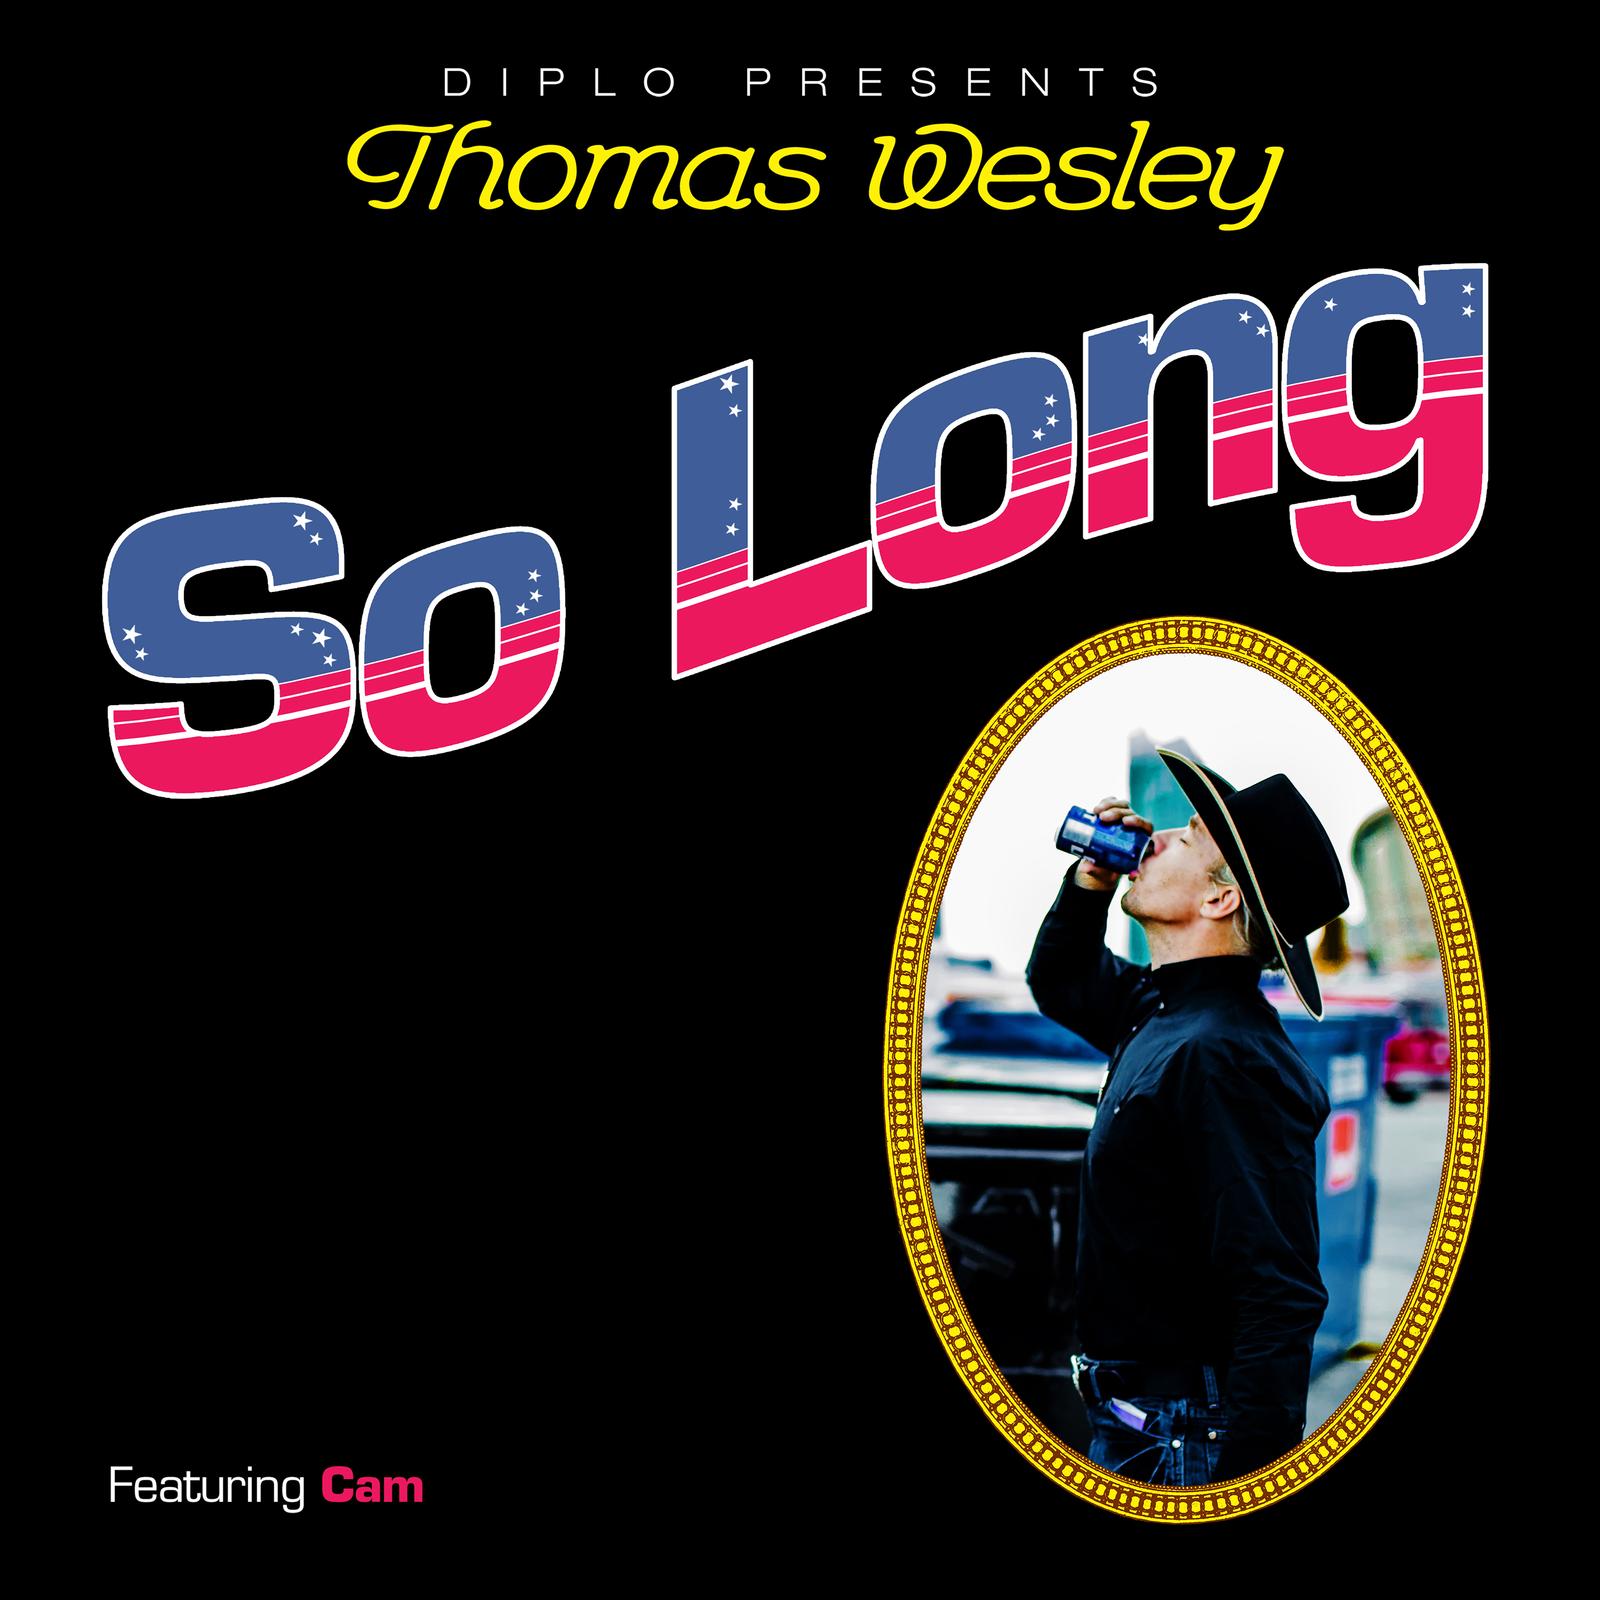 Diplo apresenta Thomas Wesley e estreia "So Long", com a participação de Cam 41